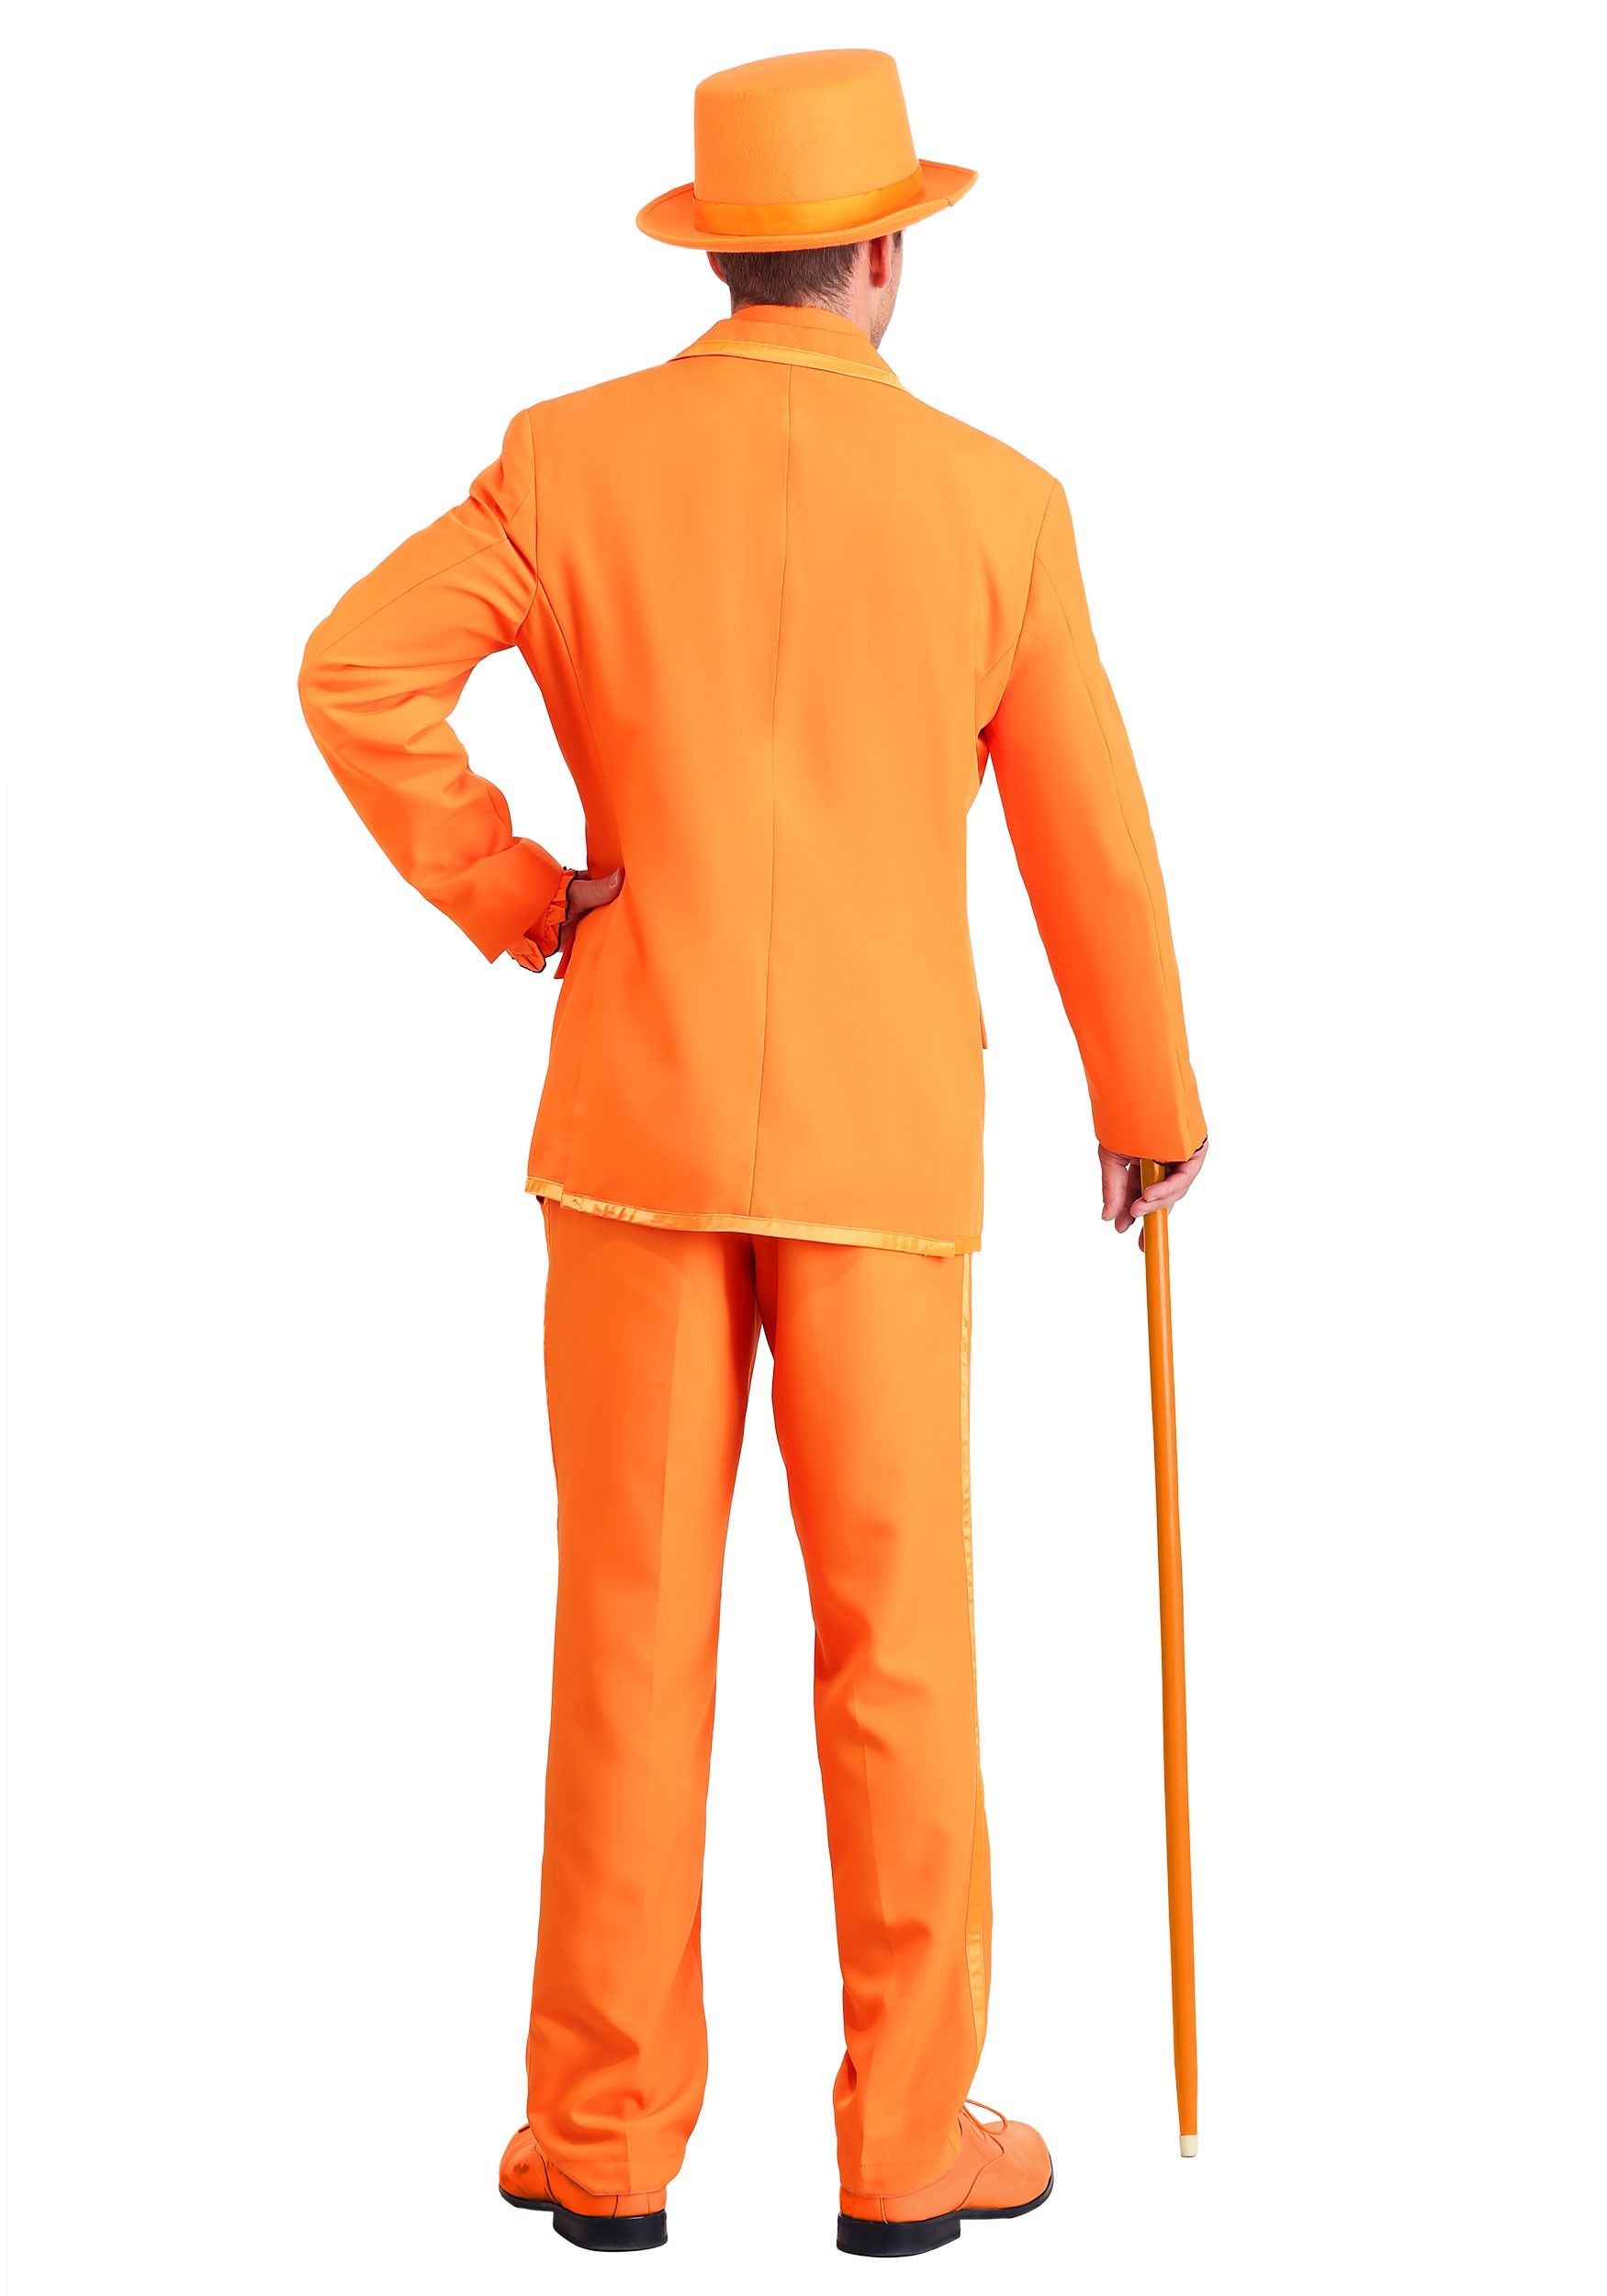 Plus Size Orange Tuxedo Costume For Men